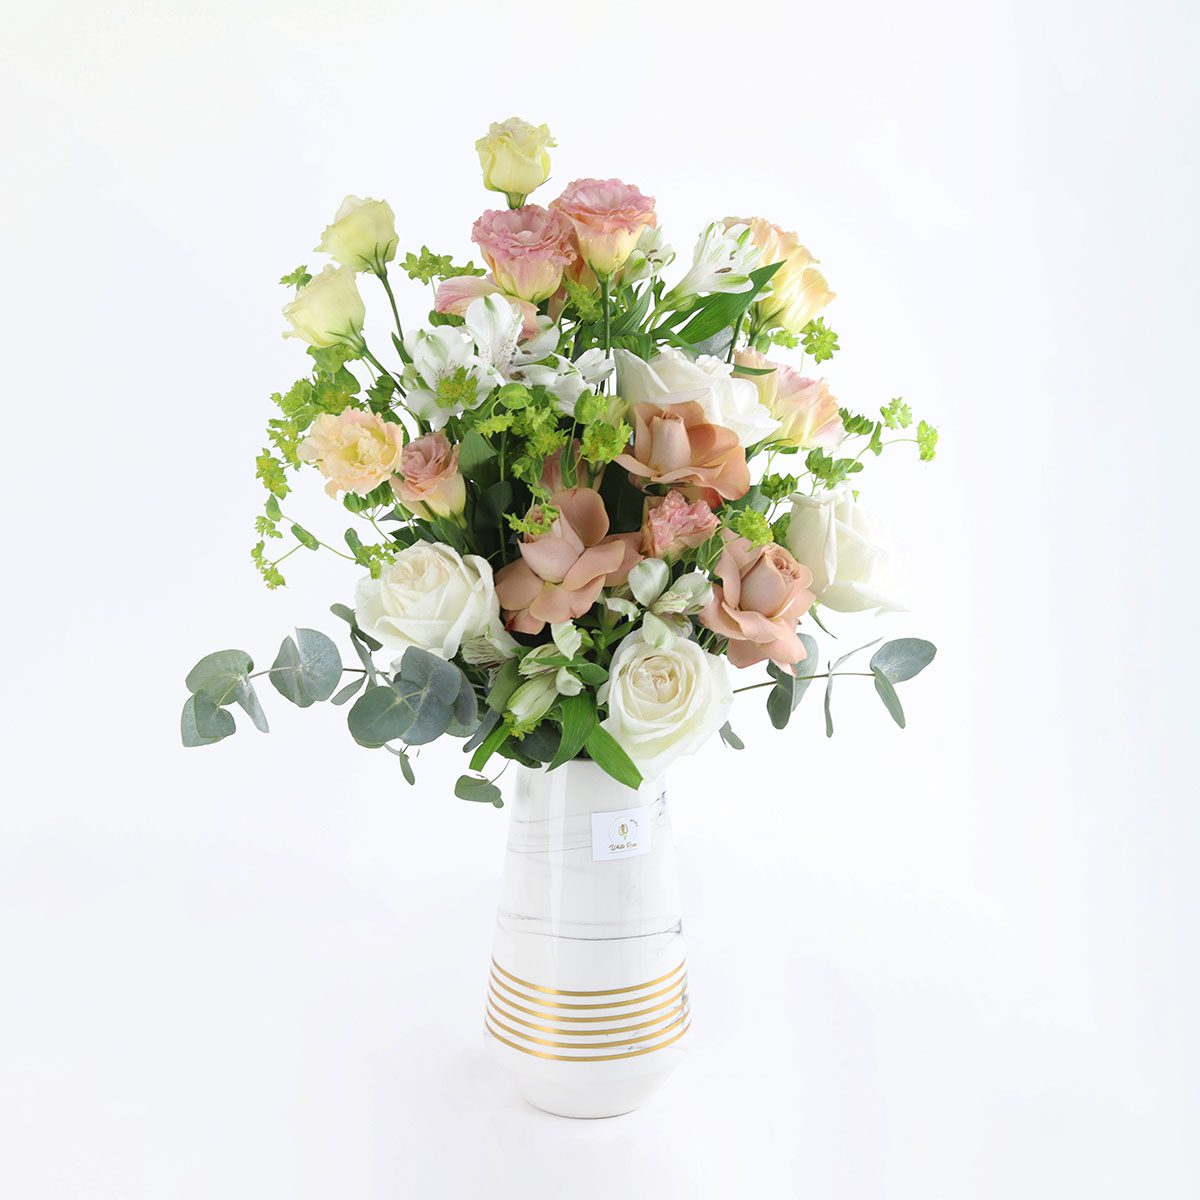 Wonder vase - Ohara and Roses Mix - White Rose Flowers